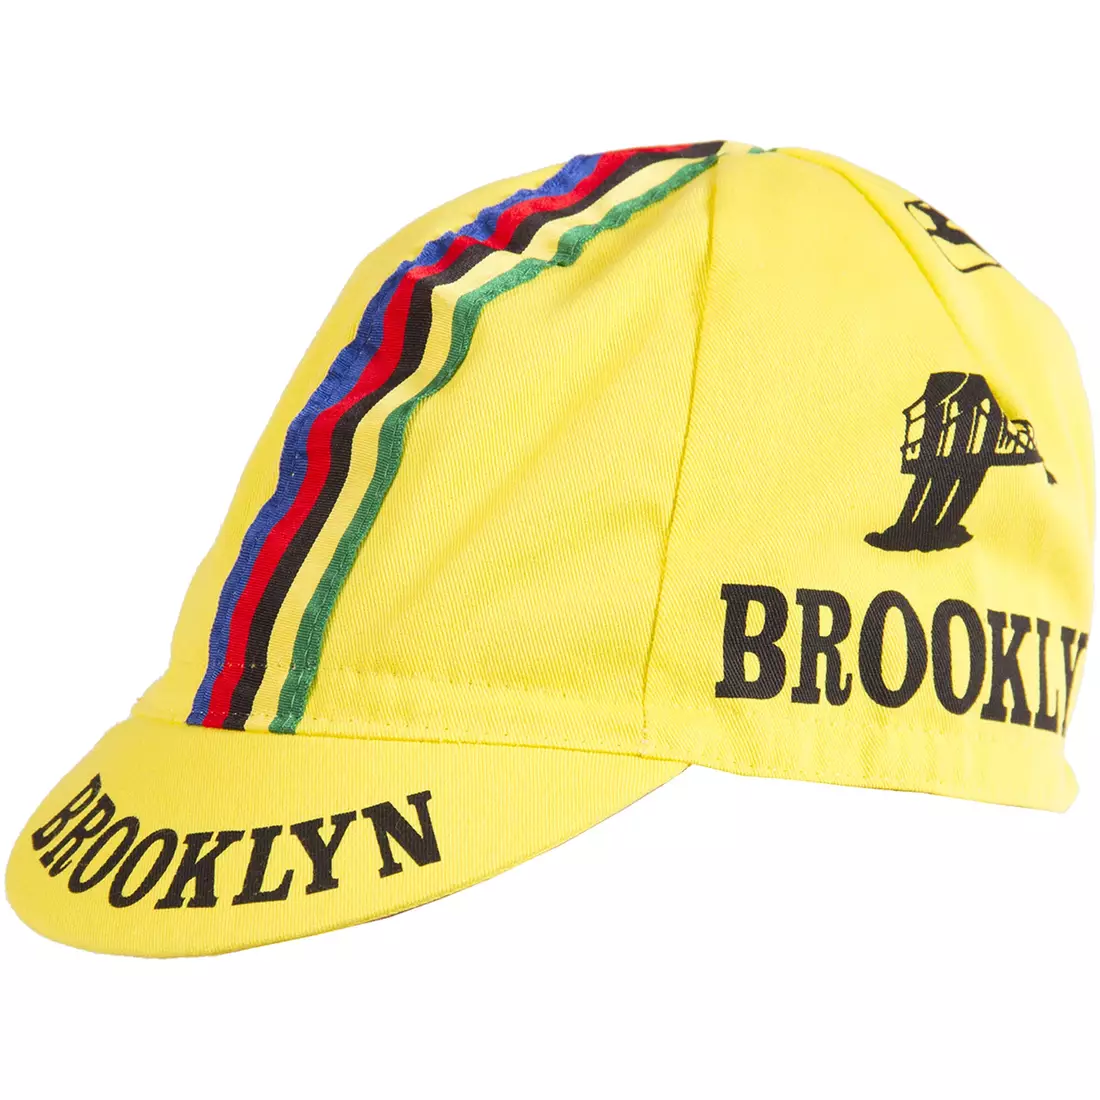 GIORDANA SS18 kerékpáros sapka - Brooklyn - Sárga csíkos szalaggal GI-S6-COCA-BROK-YELL egy méret